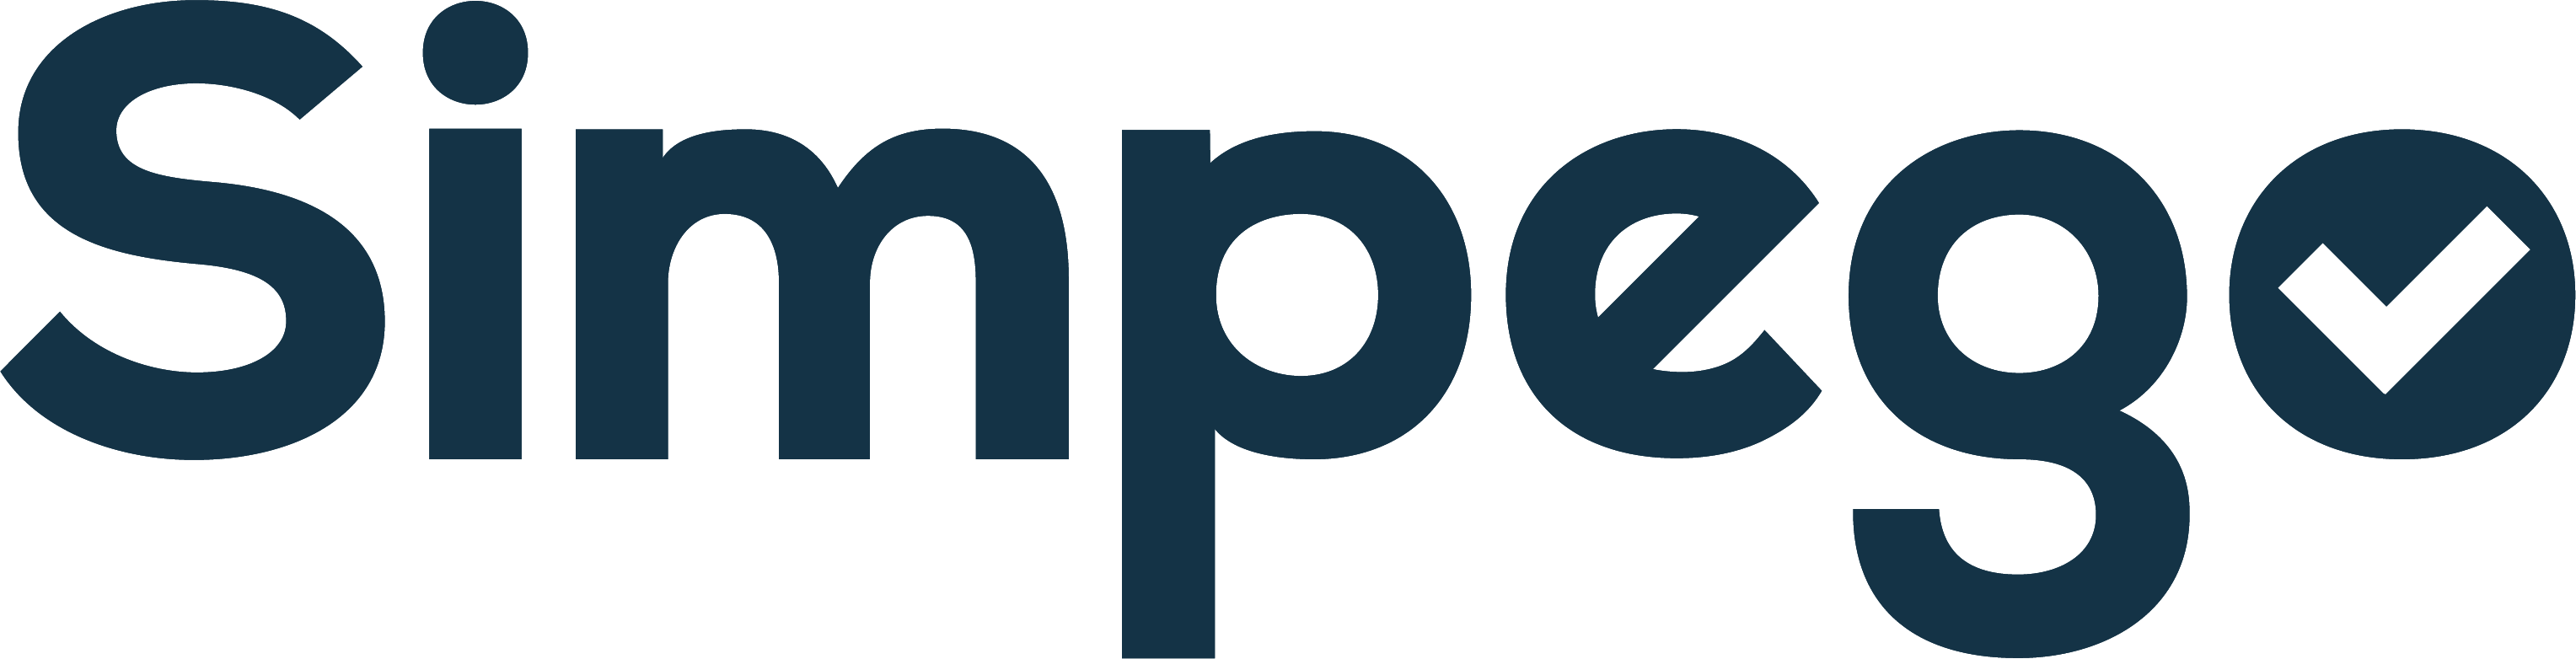 simpego-logo_blau-1